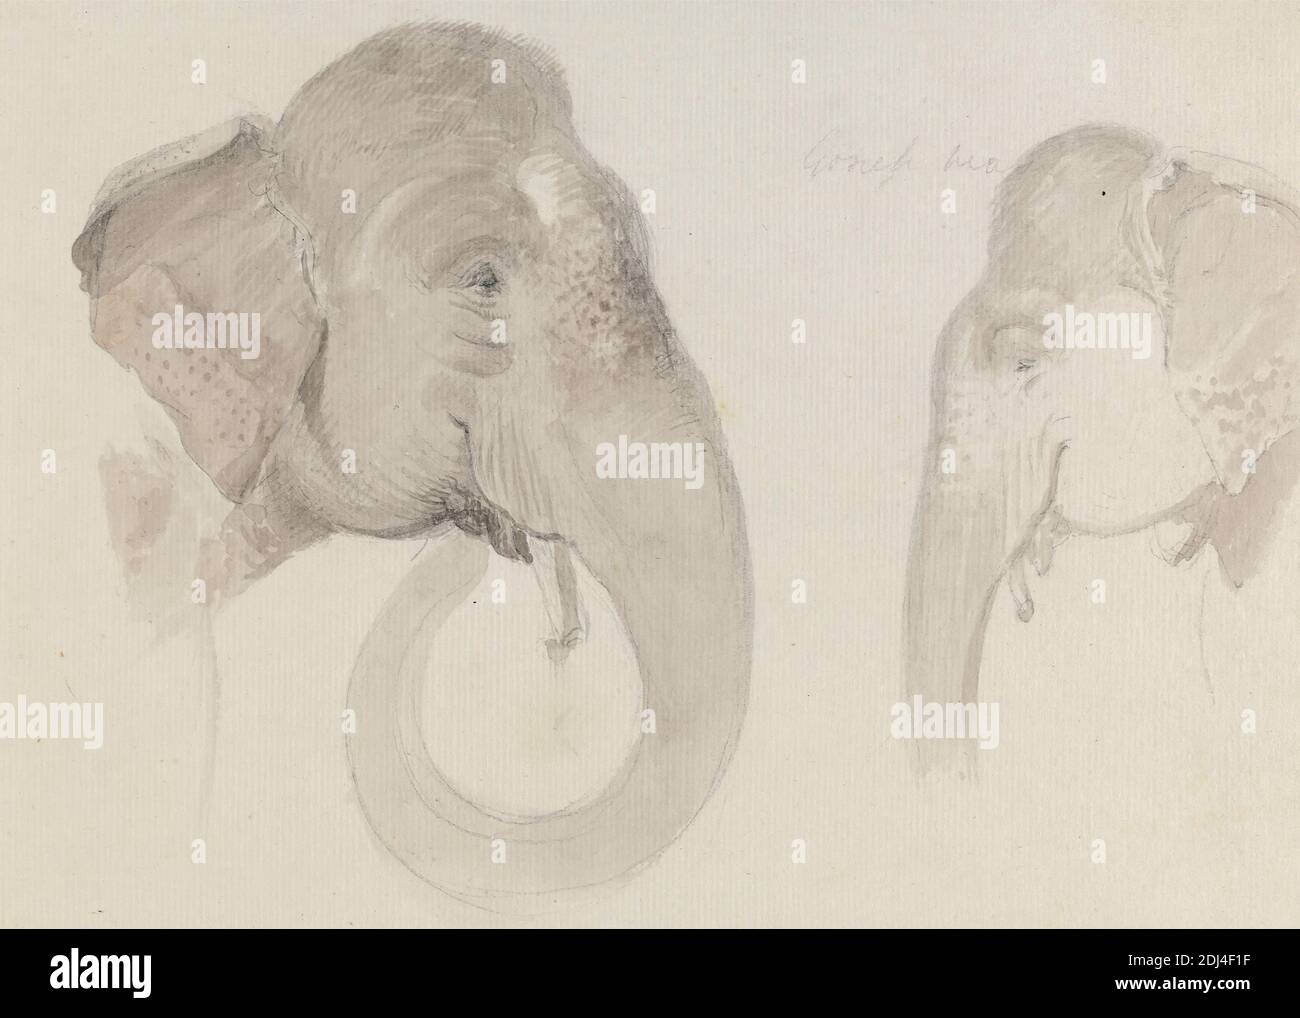 Due Studi di un capo di elefante indiano, Thomas Daniell, 1749–1840, britannico, attivo in India, ca. 1840, Gray wash over graphite on medium, leggermente testurizzato, carta panna defilata, foglio: 7 x 9 5/8 pollici (17.8 x 24.4 cm), arte animale, elefanti (animali), studi Foto Stock